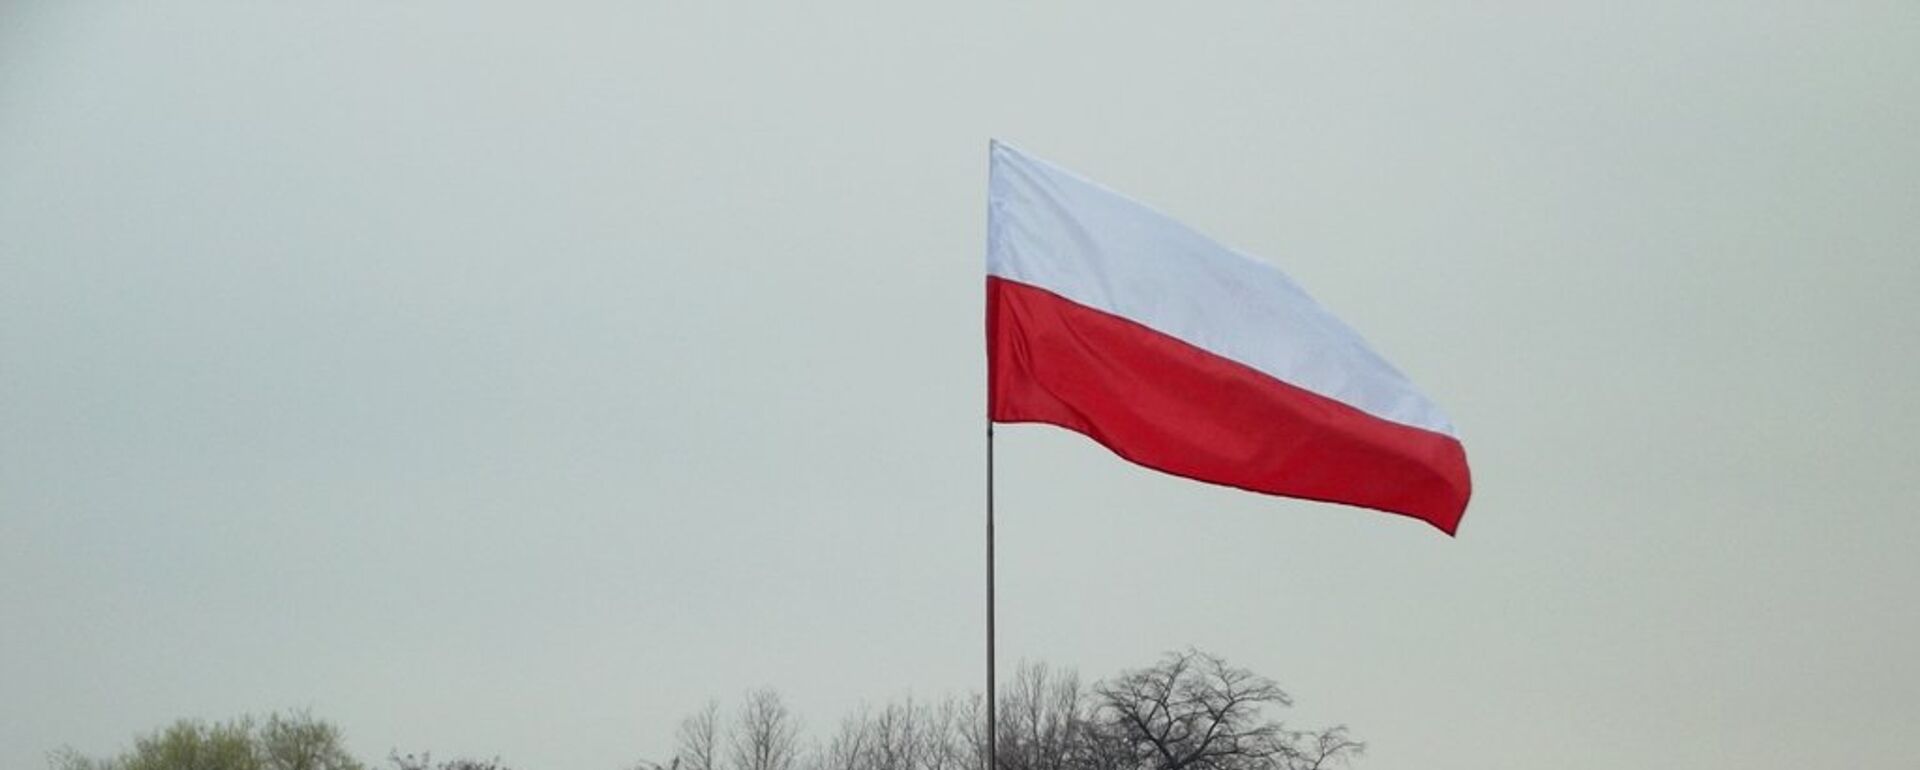 Флаг Польши - Sputnik Латвия, 1920, 18.04.2016